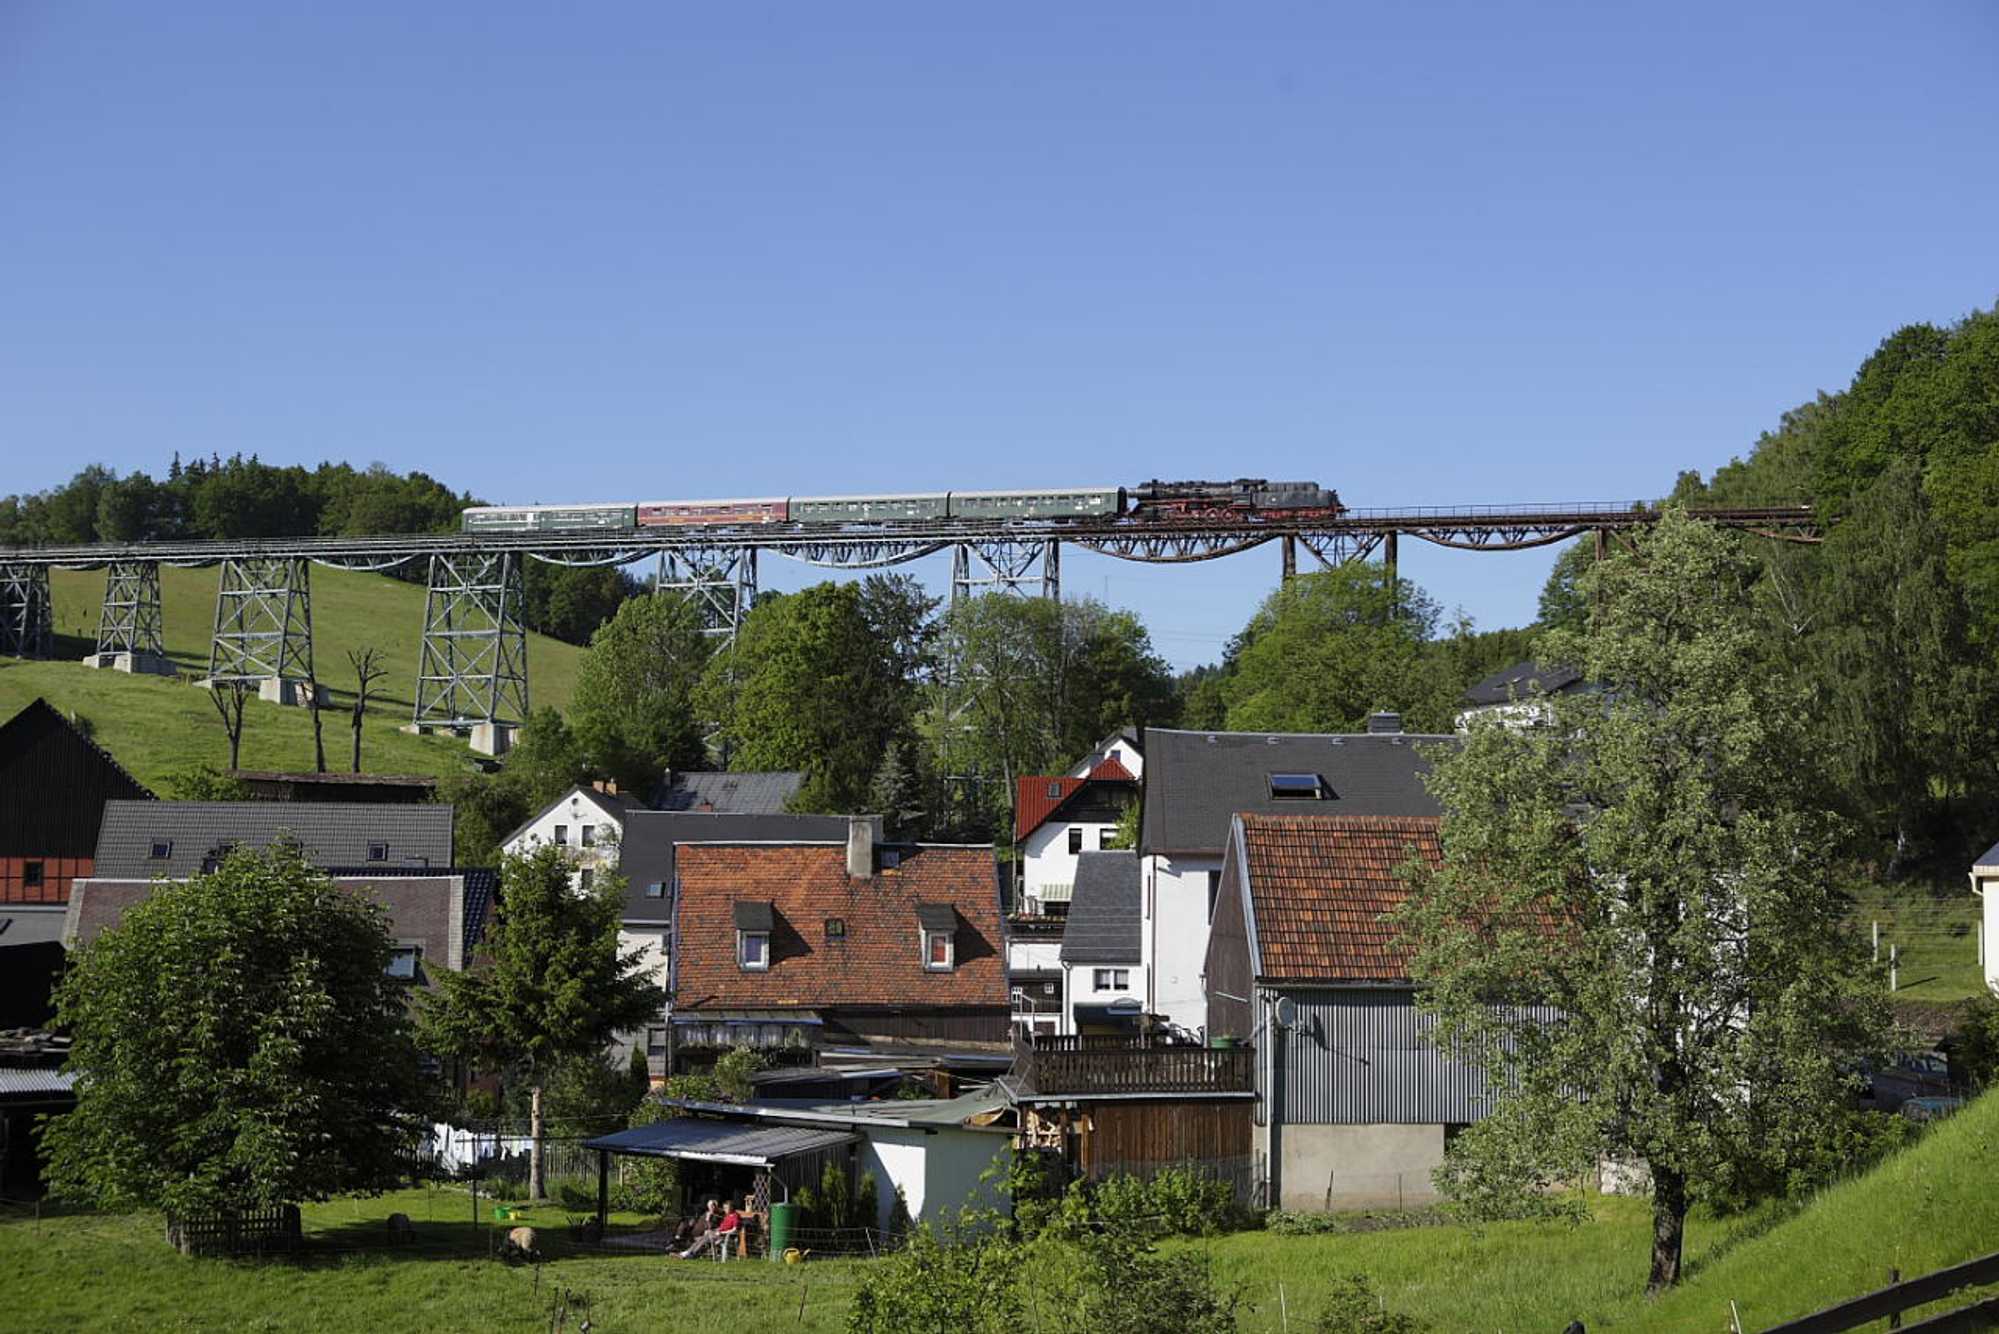 Das Markersbacher Viadukt – hier am 23. Mai 2009 mit dem VSE-Zug – ist bei Fotografen beliebt, aber trägt zu hohen Streckenunterhaltungskosten bei. Wer bezahlt diese in Zukunft?